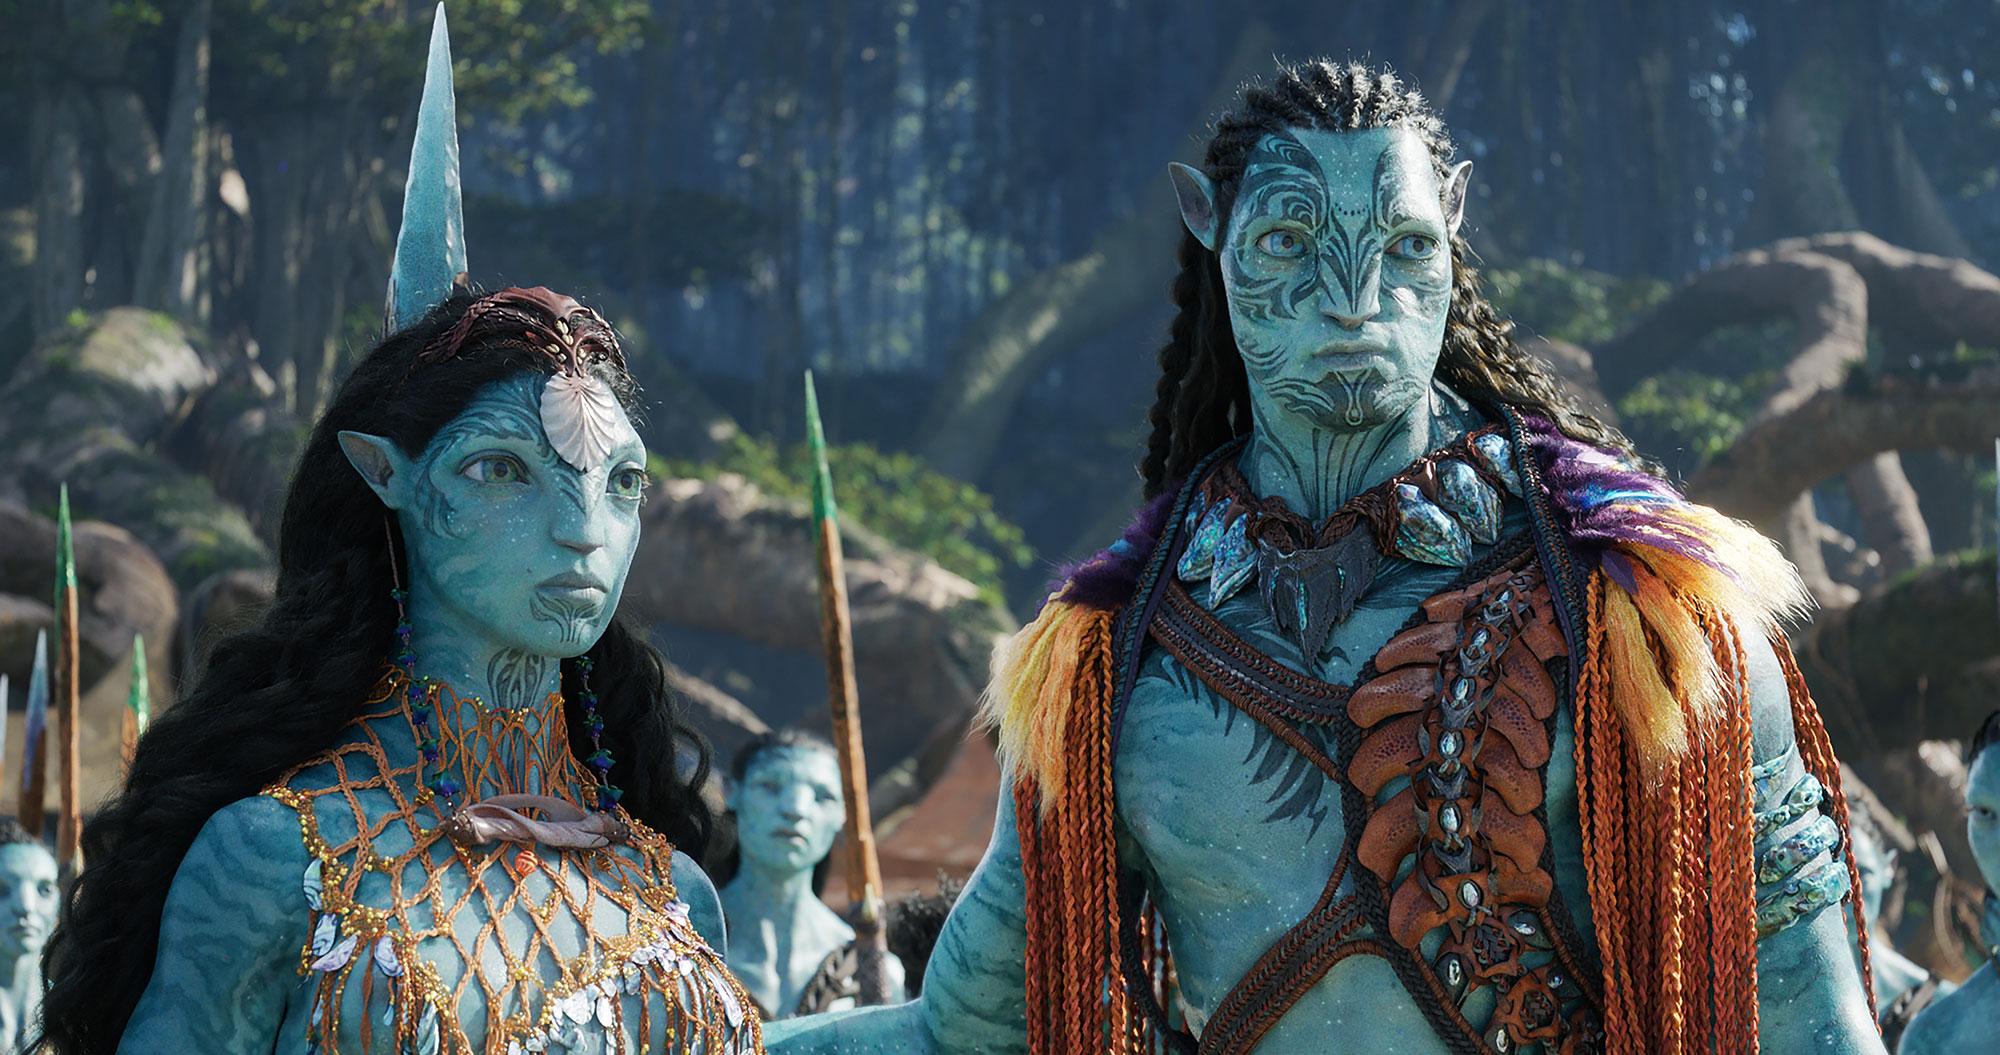 Nhà sản xuất Avatar bất ngờ tiết lộ về nội dung của phần 3 4 và 5